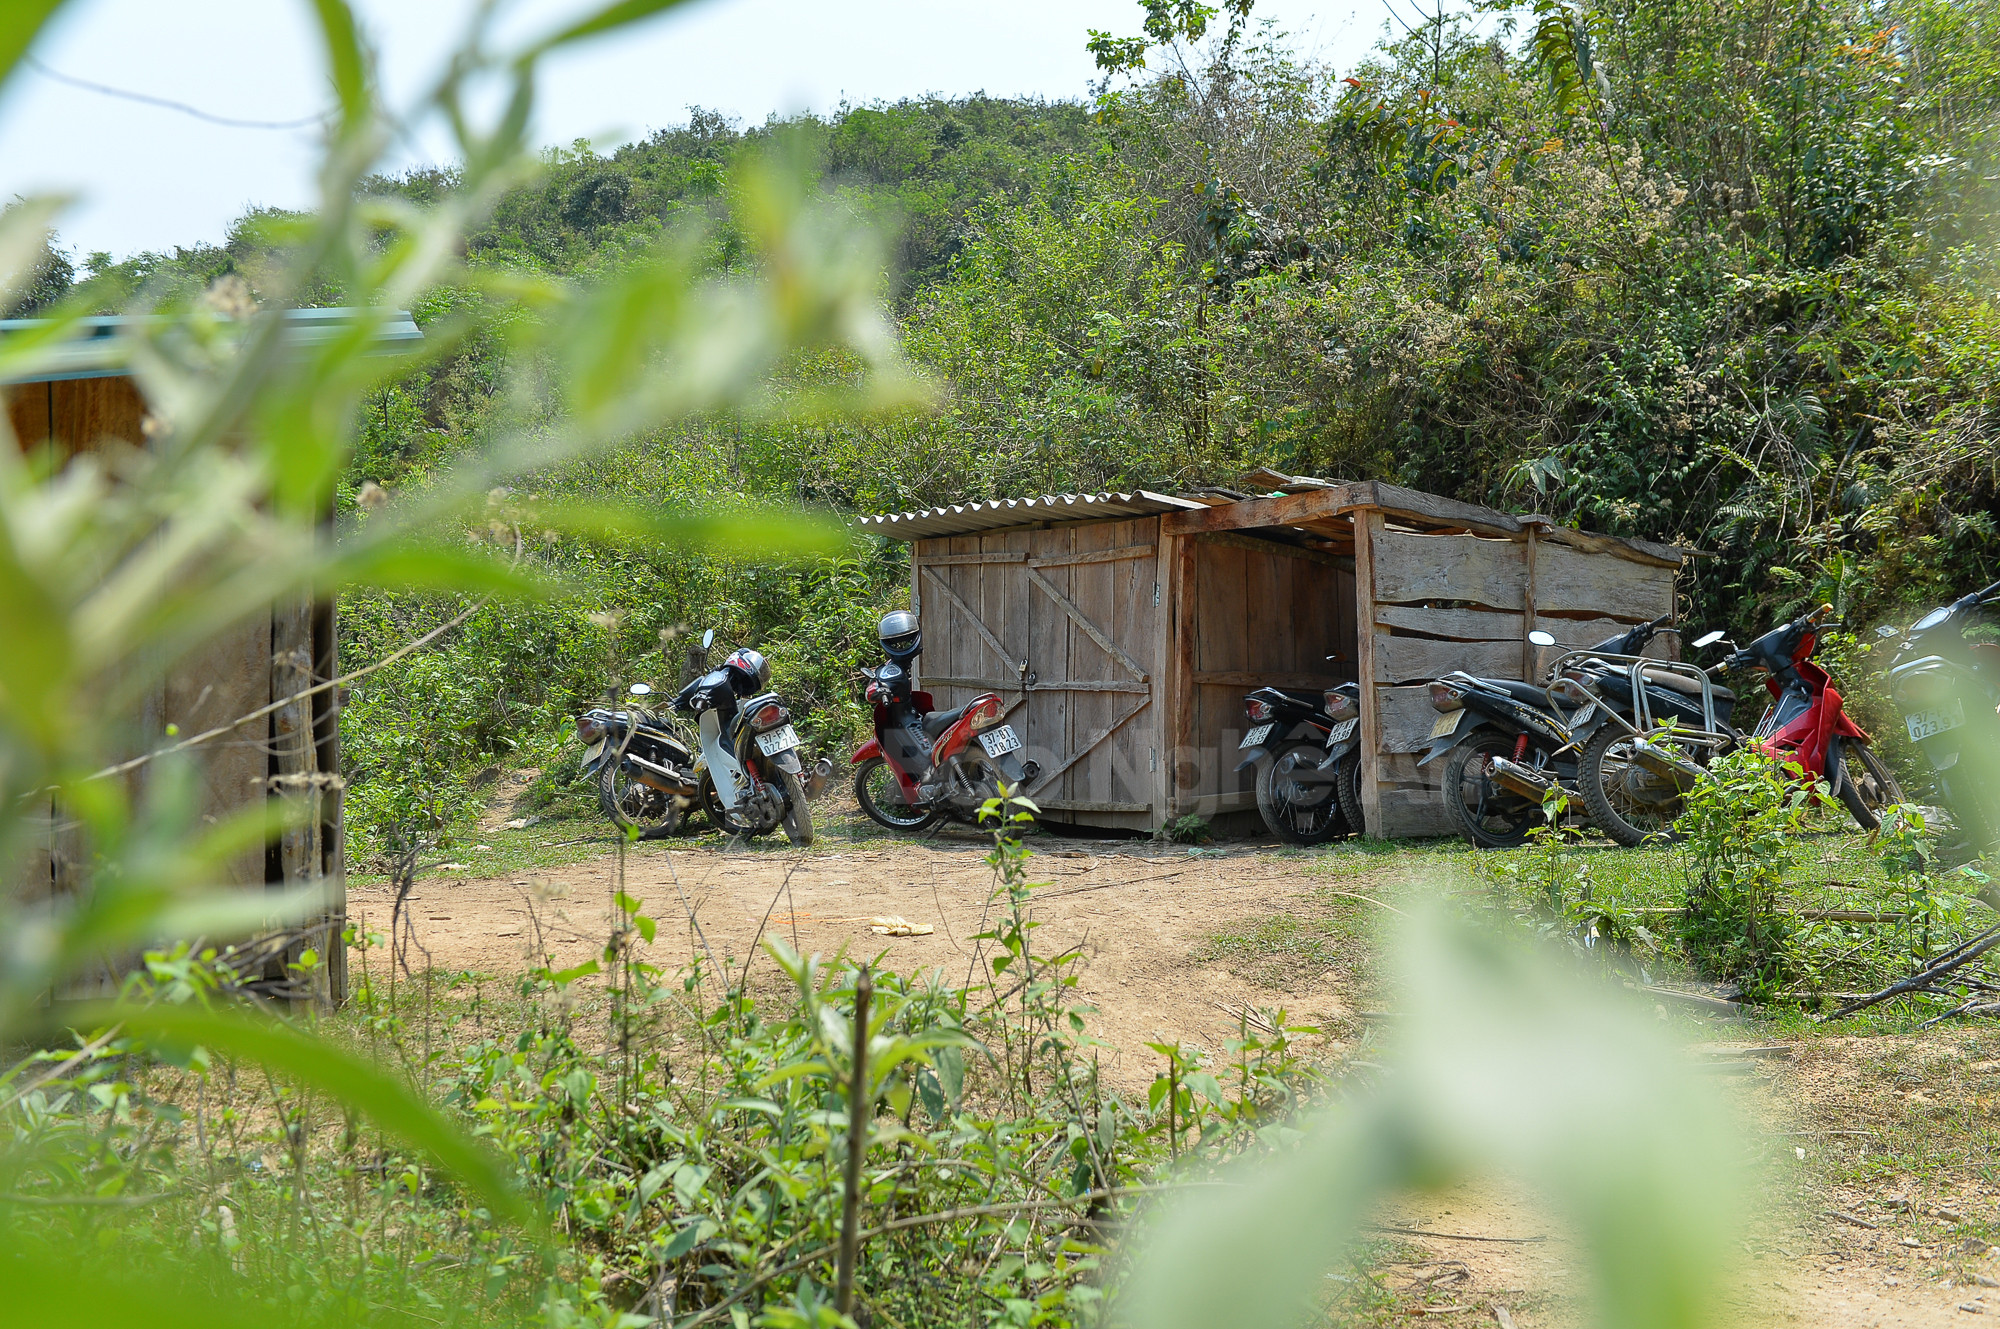 Trên đường xuống chốt, có một số lán trại người dân dựng lên để cất giữ phương tiện xe máy.